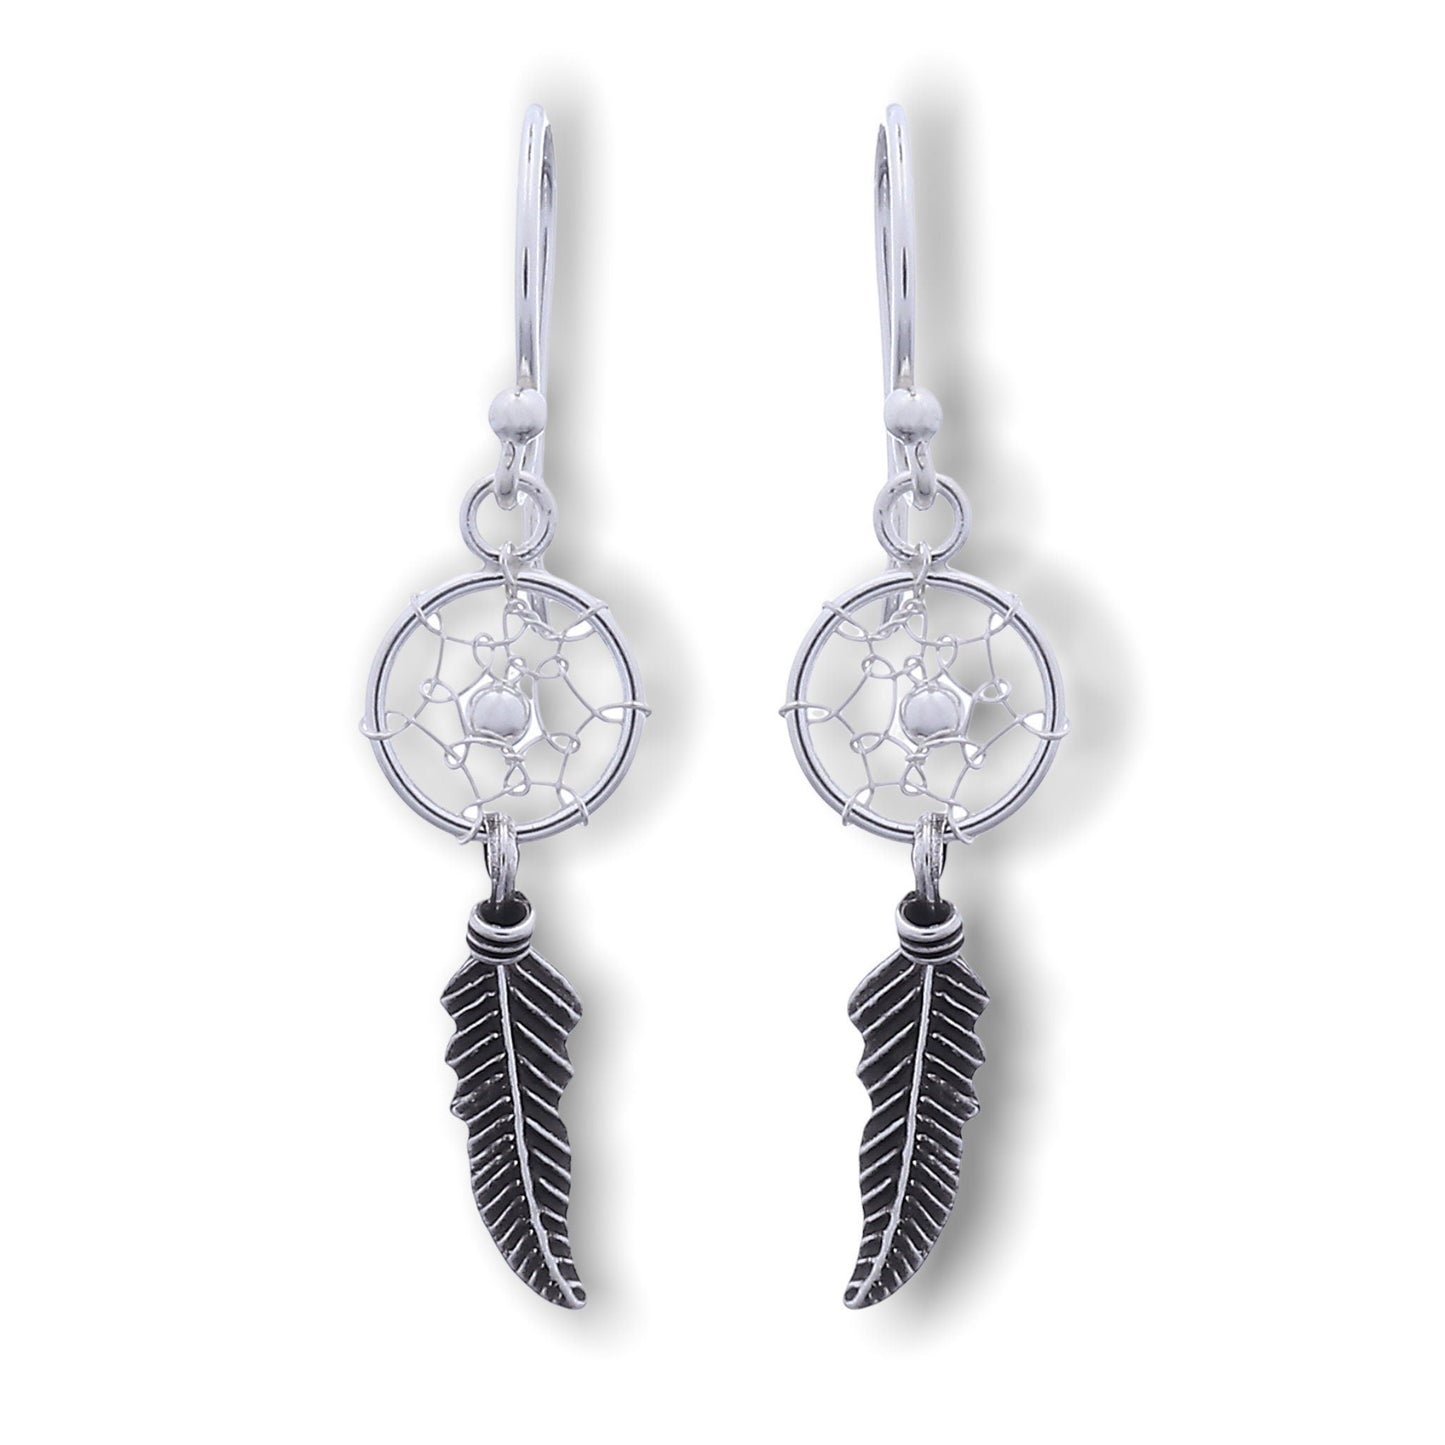 Boucles d'oreilles Catcher de rêve - 925 Sterling Silver Tribal Boho Shaman Indian Bijoux - Ear 925-42